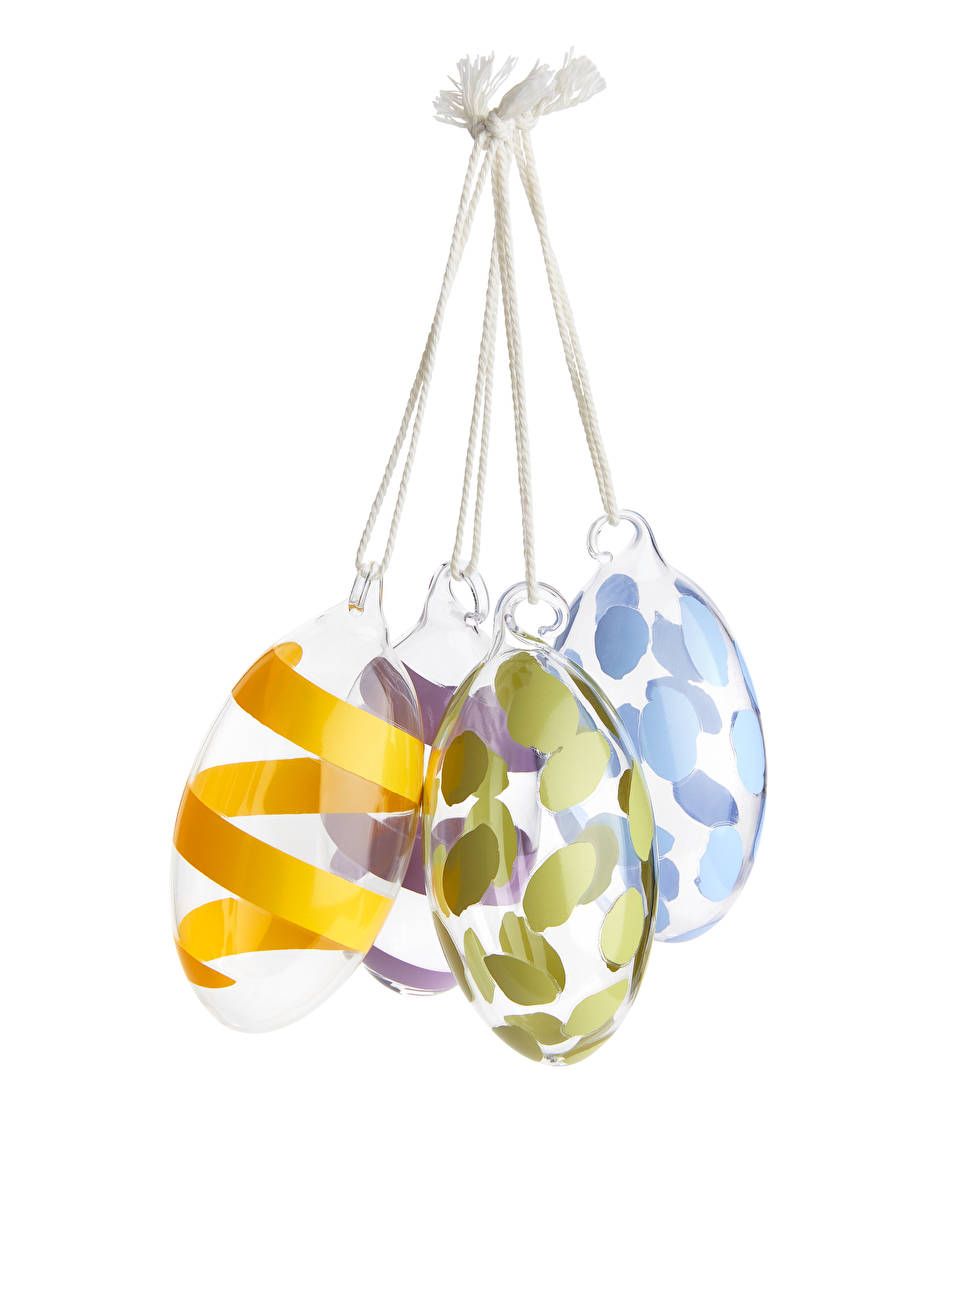 Oval Glass Ornaments - Multicolour - ARKET PT | ARKET (US&UK)